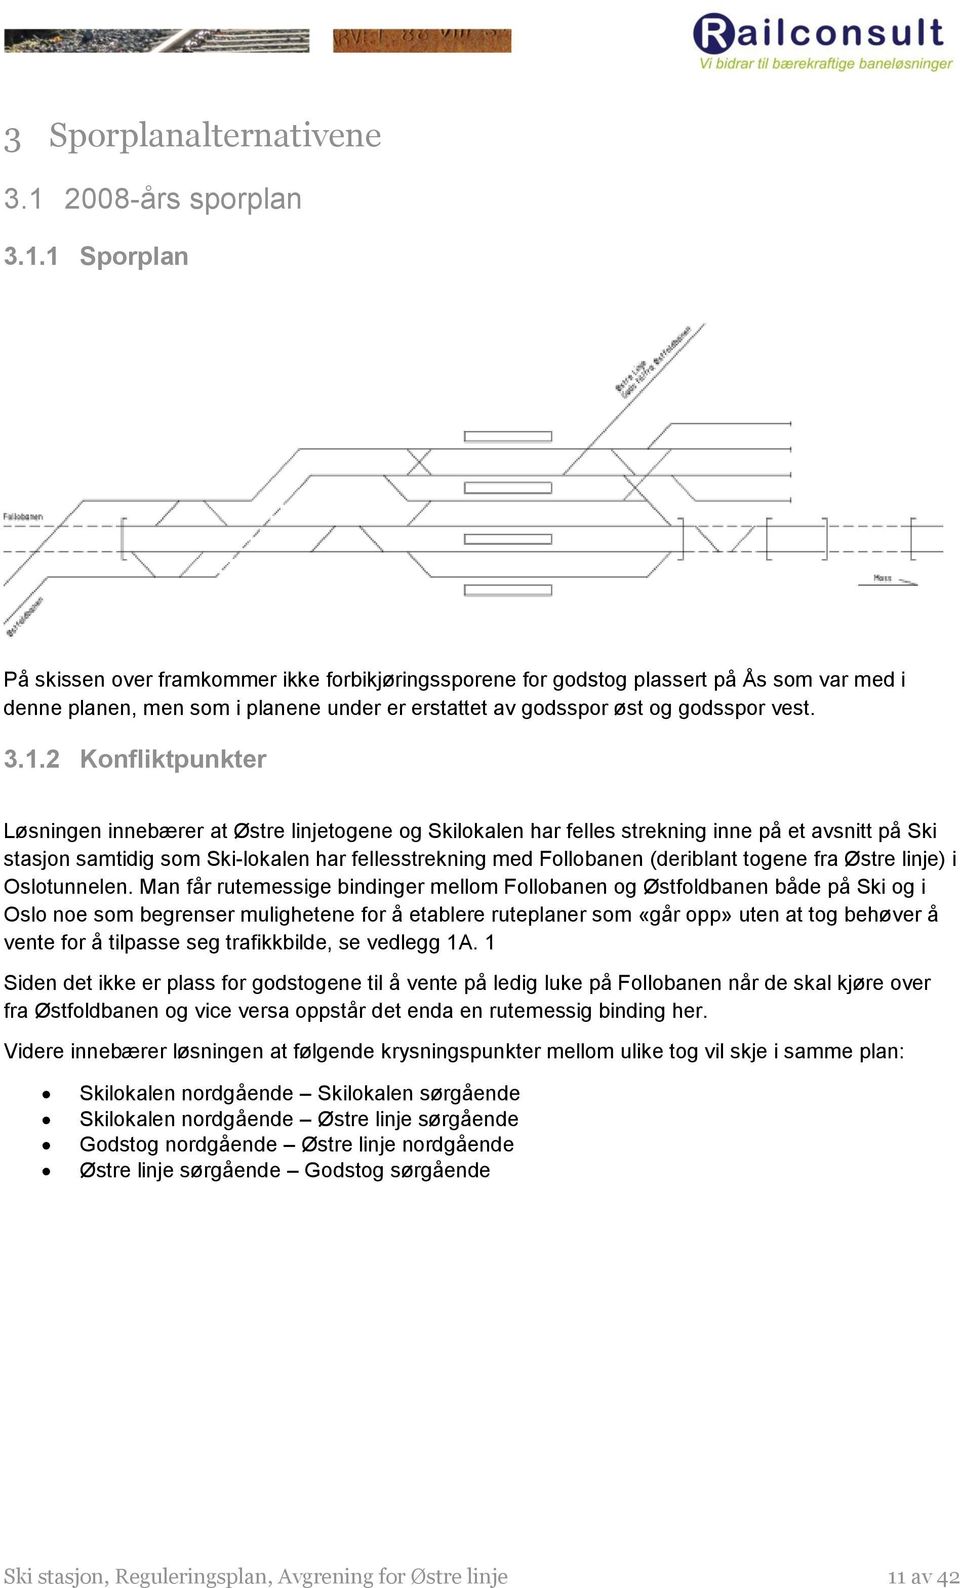 1 Sporplan På skissen over framkommer ikke forbikjøringssporene for godstog plassert på Ås som var med i denne planen, men som i planene under er erstattet av godsspor øst og godsspor vest. 3.1.2